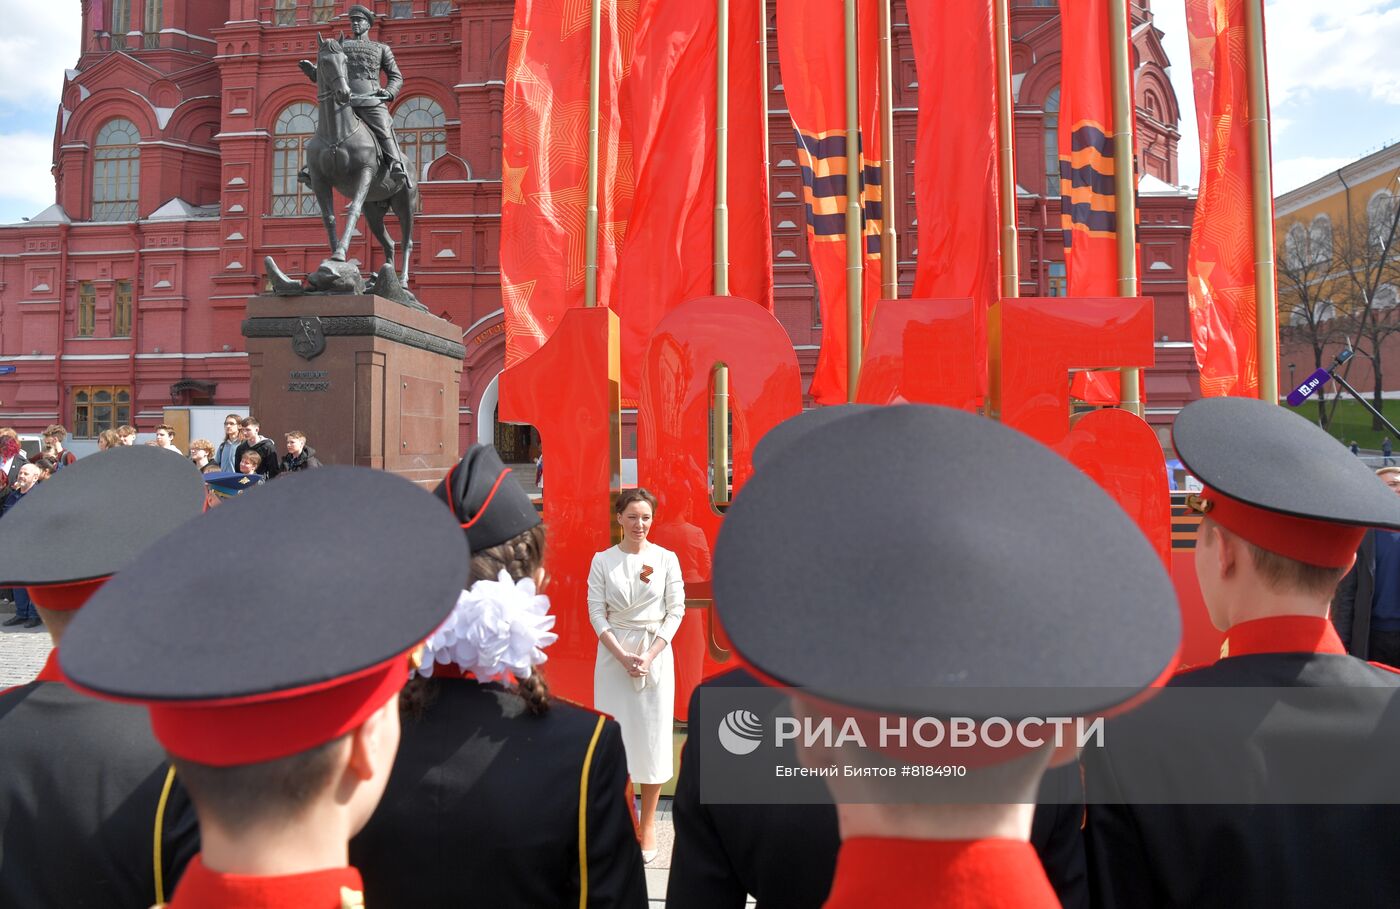 Возложение венков к могиле Неизвестного солдата у Кремлевской стены и памятнику маршалу Жукову